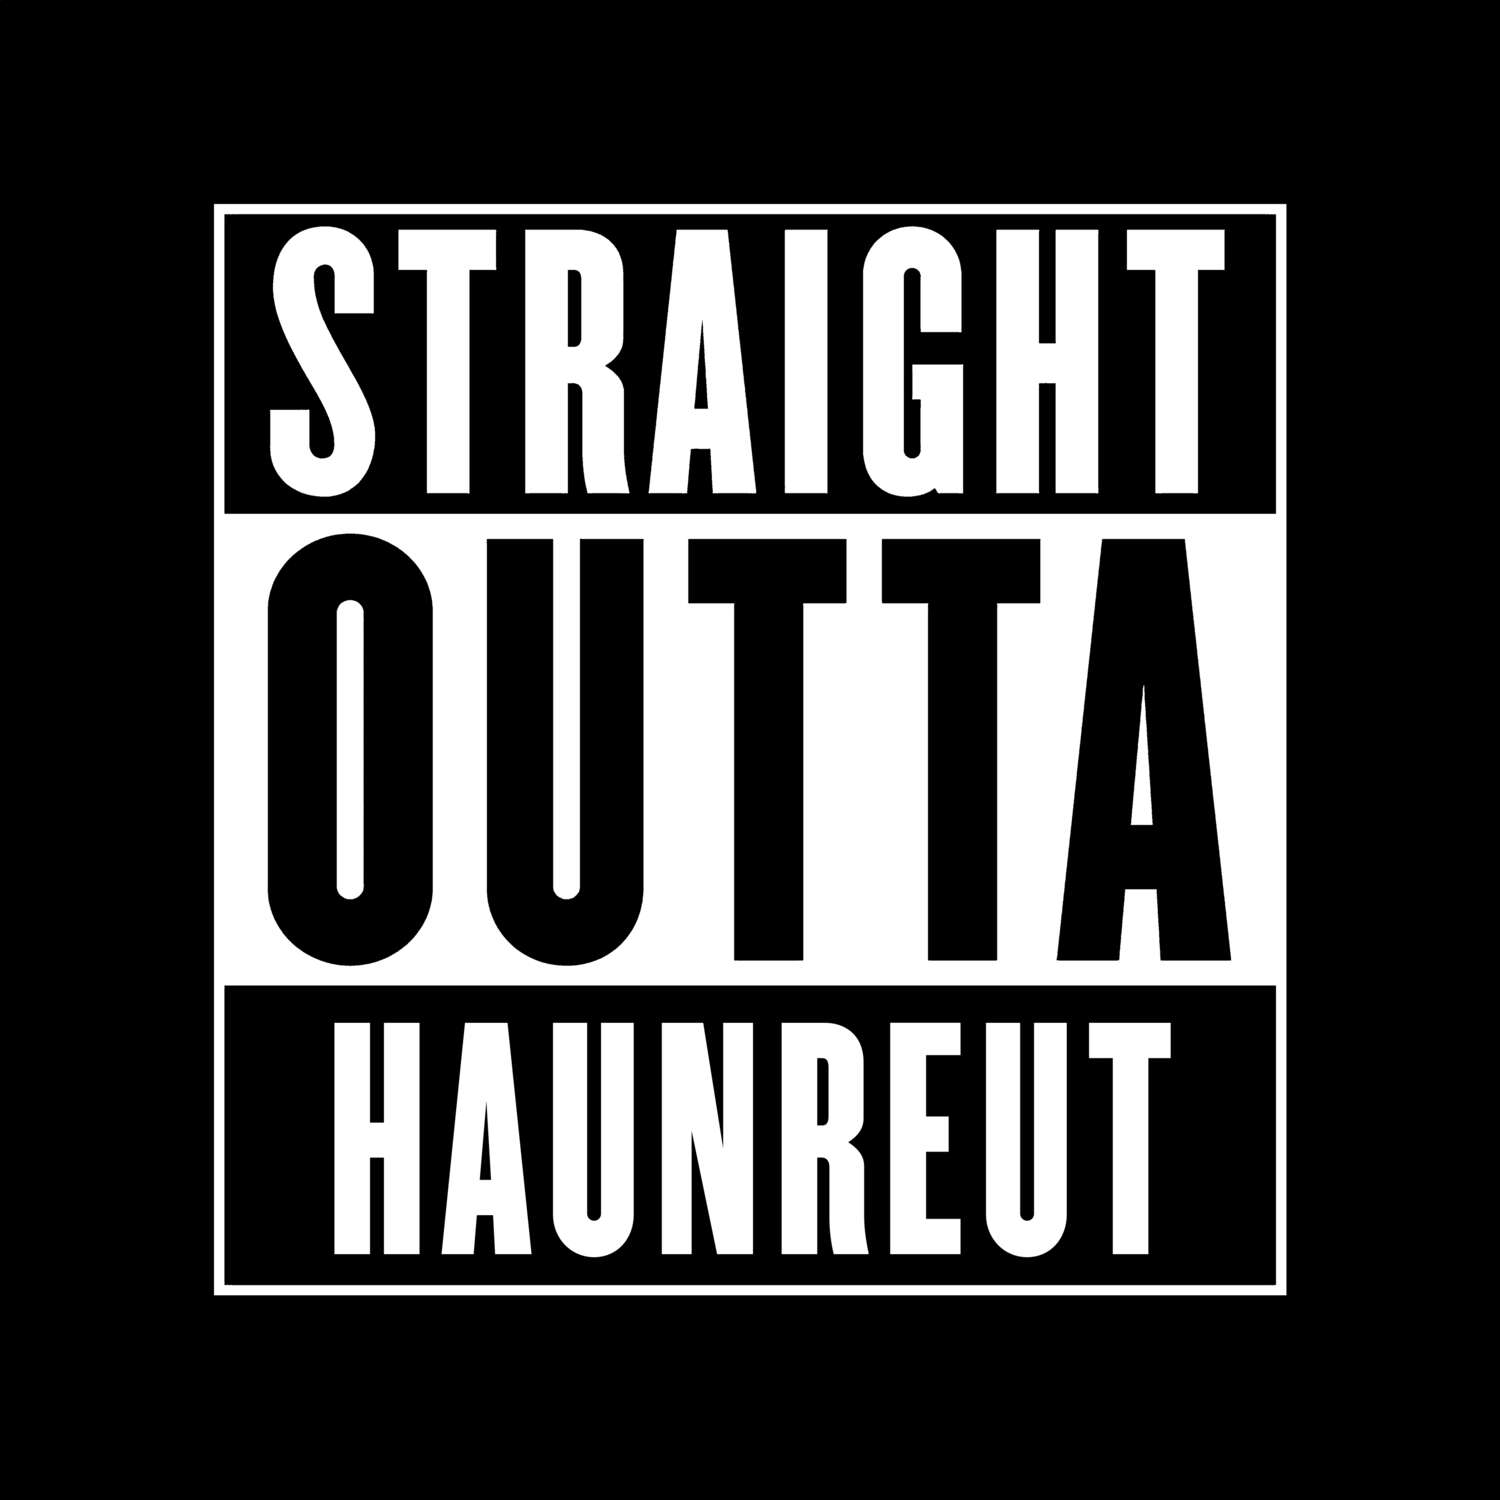 Haunreut T-Shirt »Straight Outta«